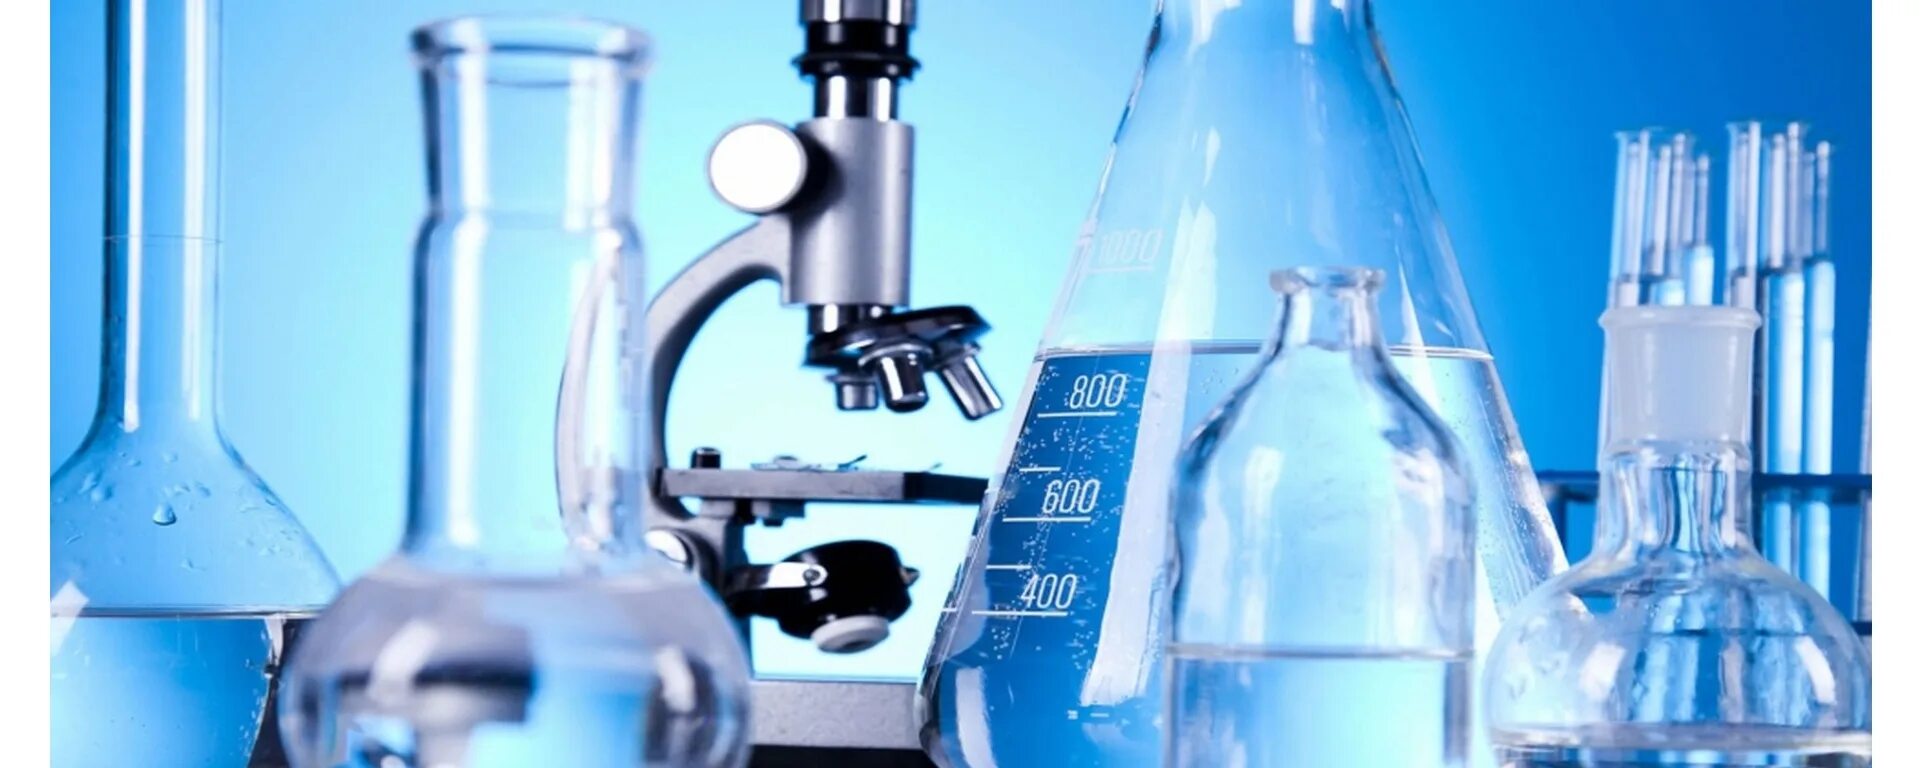 Химическое исследование воды. Лаборатория. Химия. Лабораторный контроль воды.